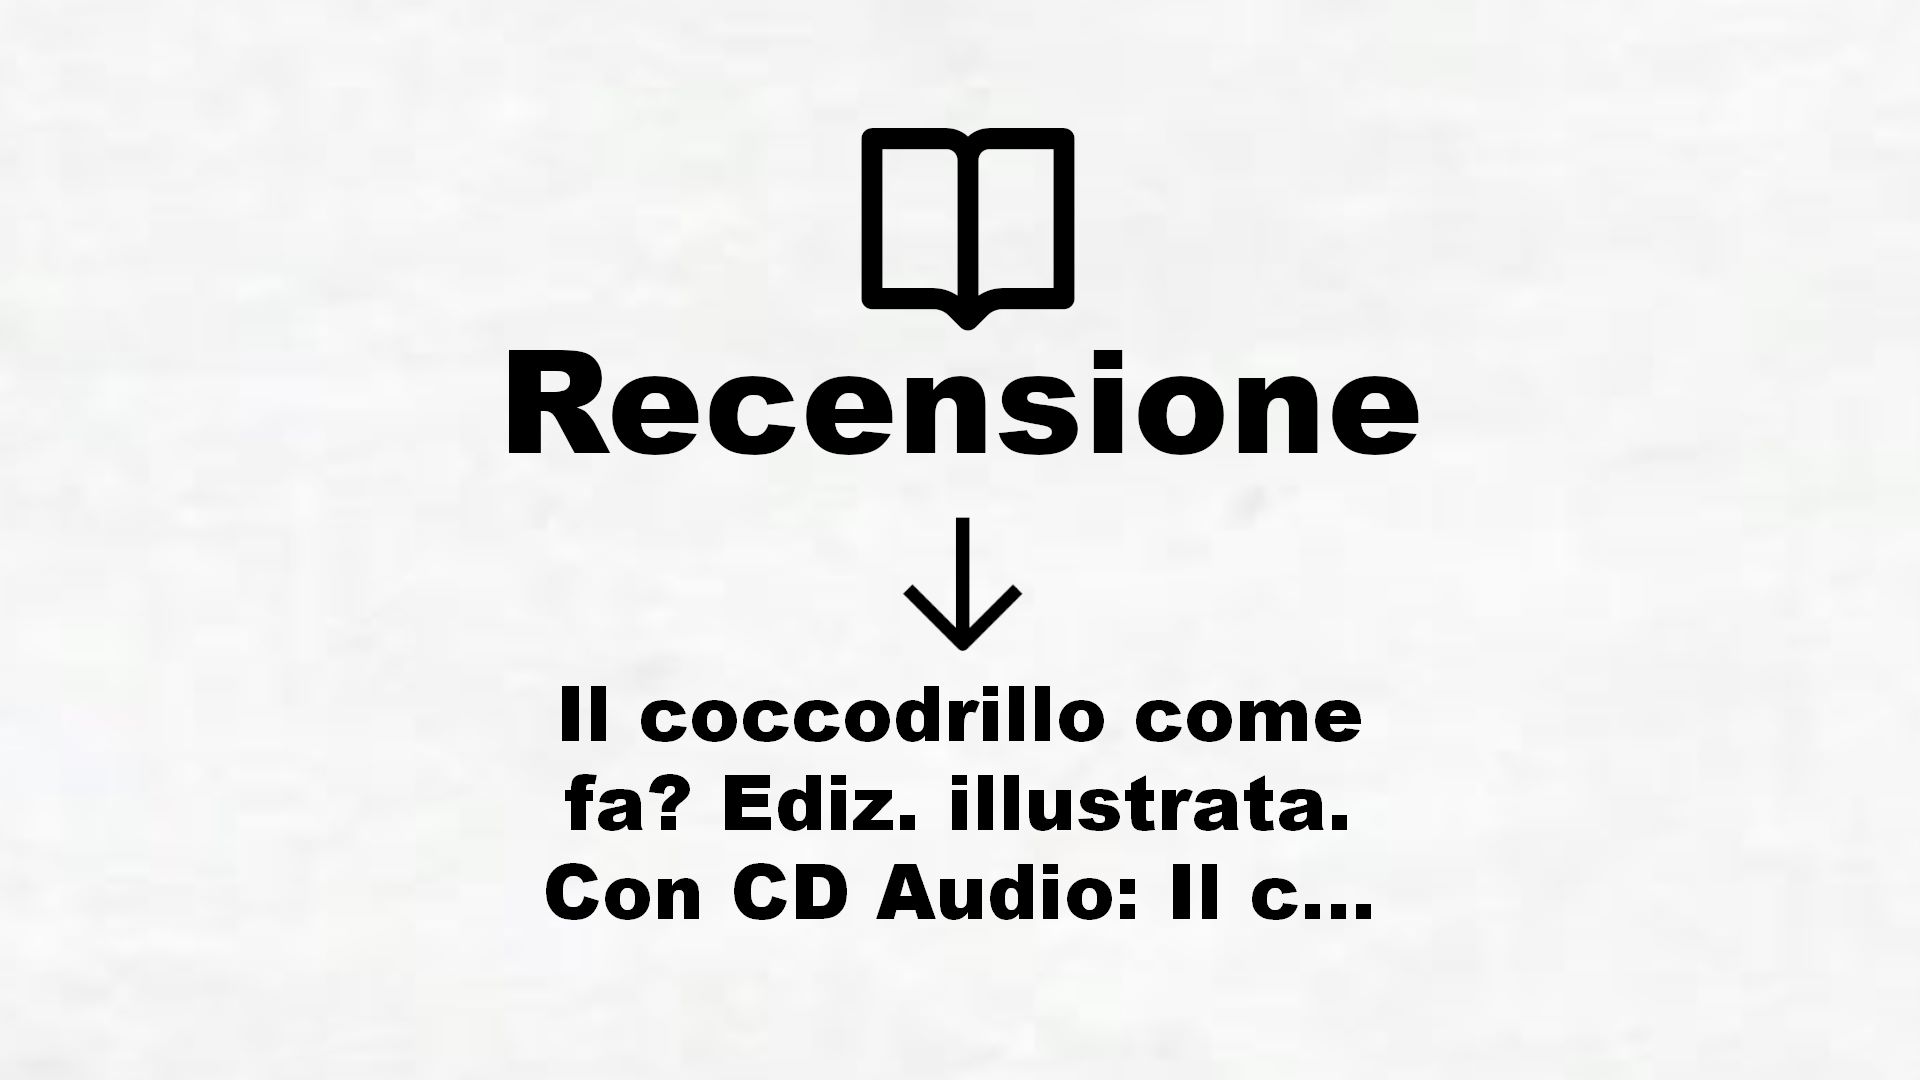 Il coccodrillo come fa? Ediz. illustrata. Con CD Audio: Il coccodrillo come fa? + CD (small board book) – Recensione Libro